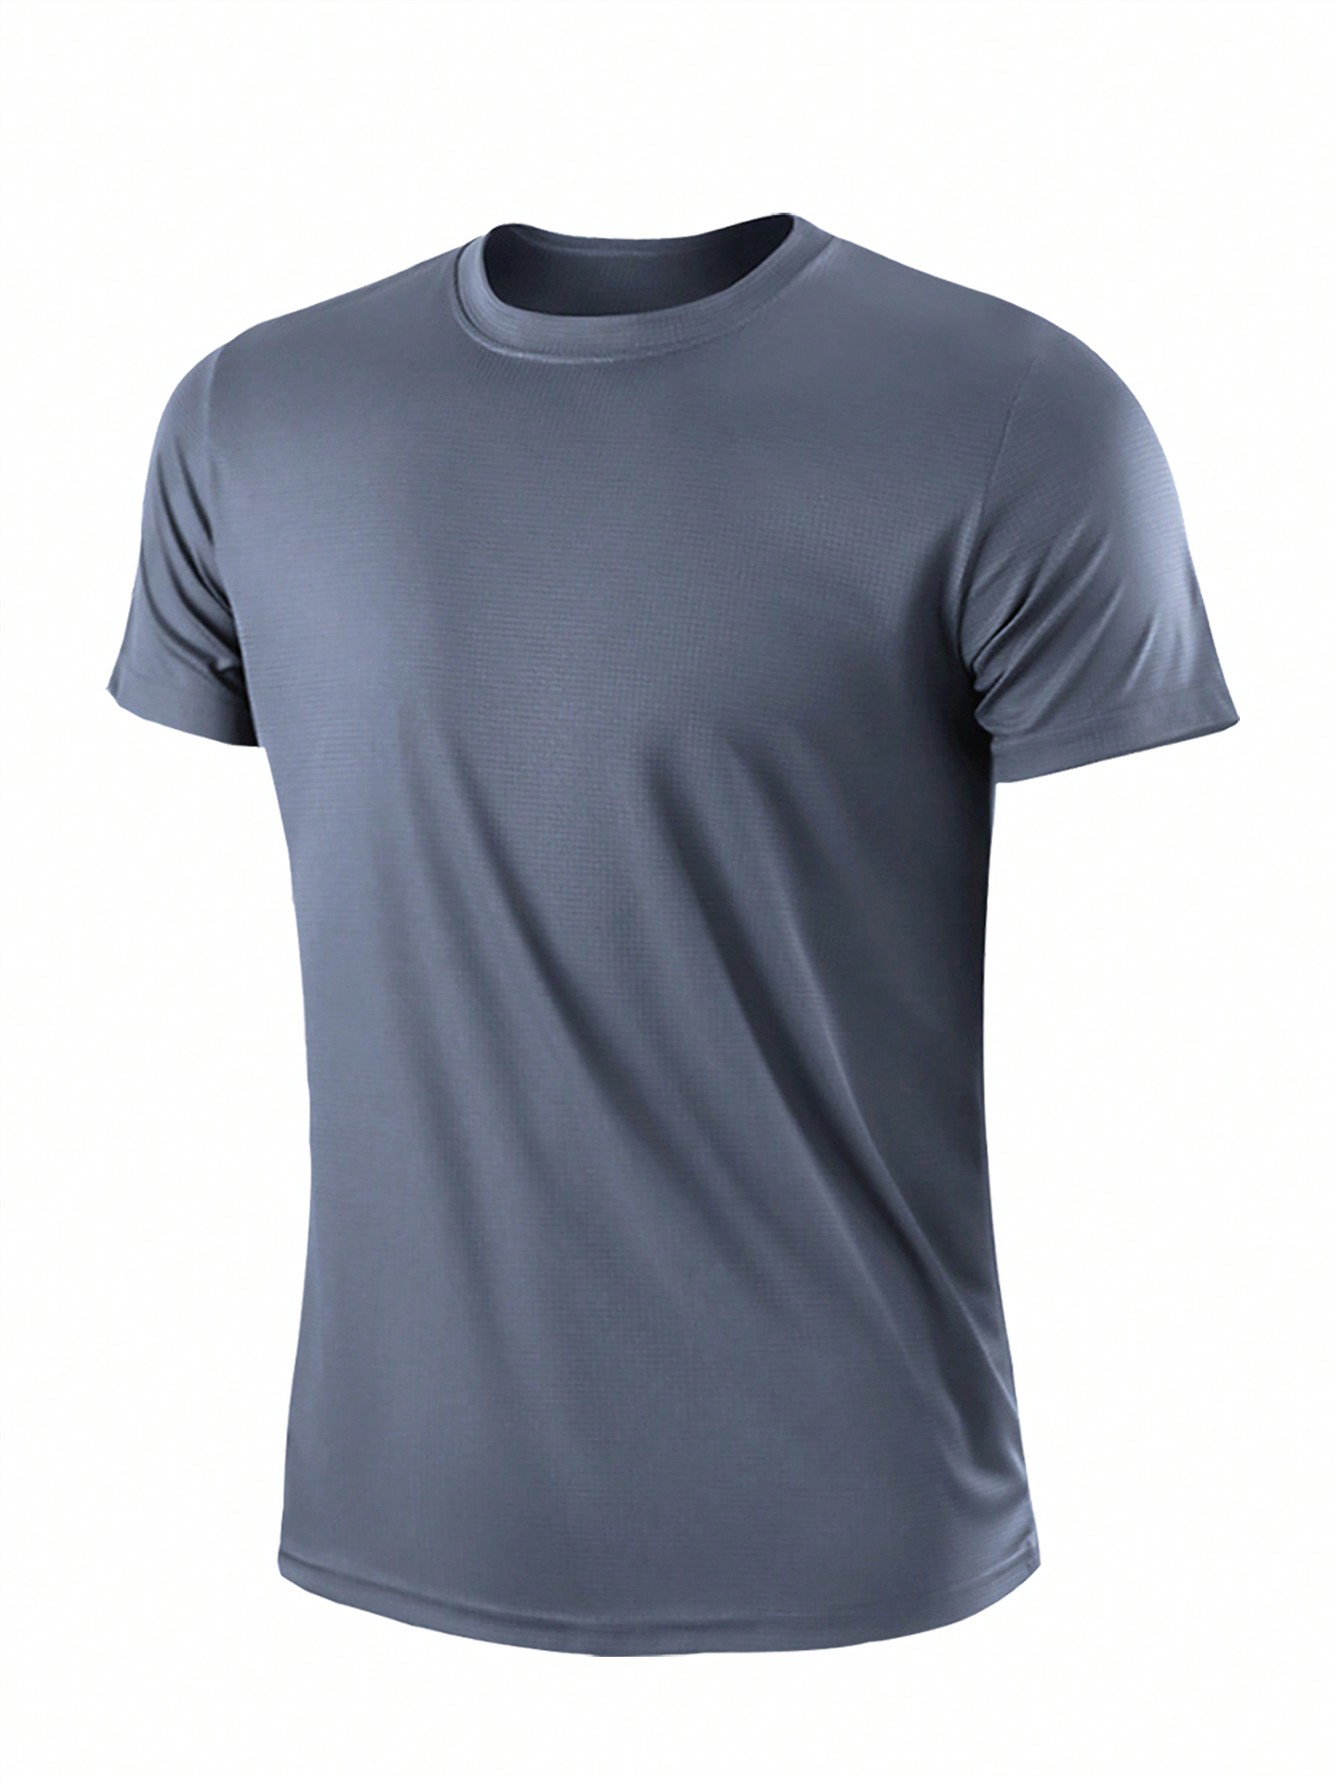 2 шт. комплект свободных футболок с короткими рукавами для тренировок и бега для мужчин, серый мужская футболка для спортзала футболка для фитнеса бодибилдинга тренировок мужская летняя спортивная футболка для бега мужская футбол